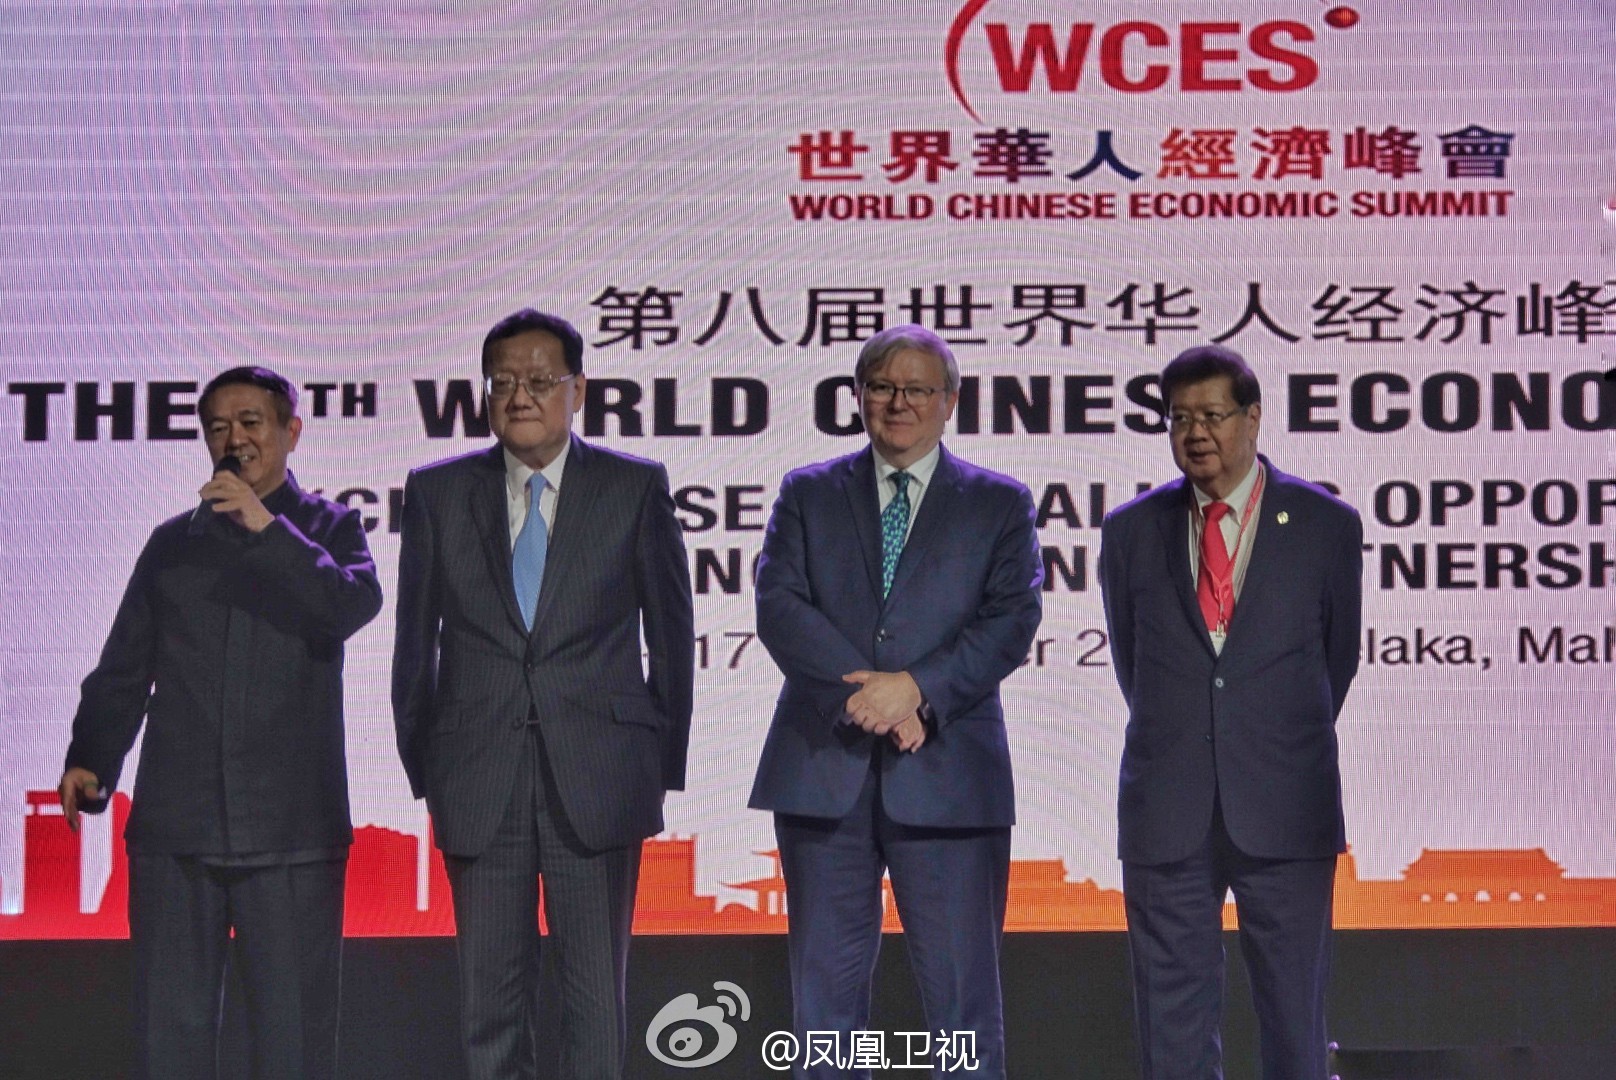 刘长乐先生出席世界华人经济峰会并颁奖_凤凰资讯